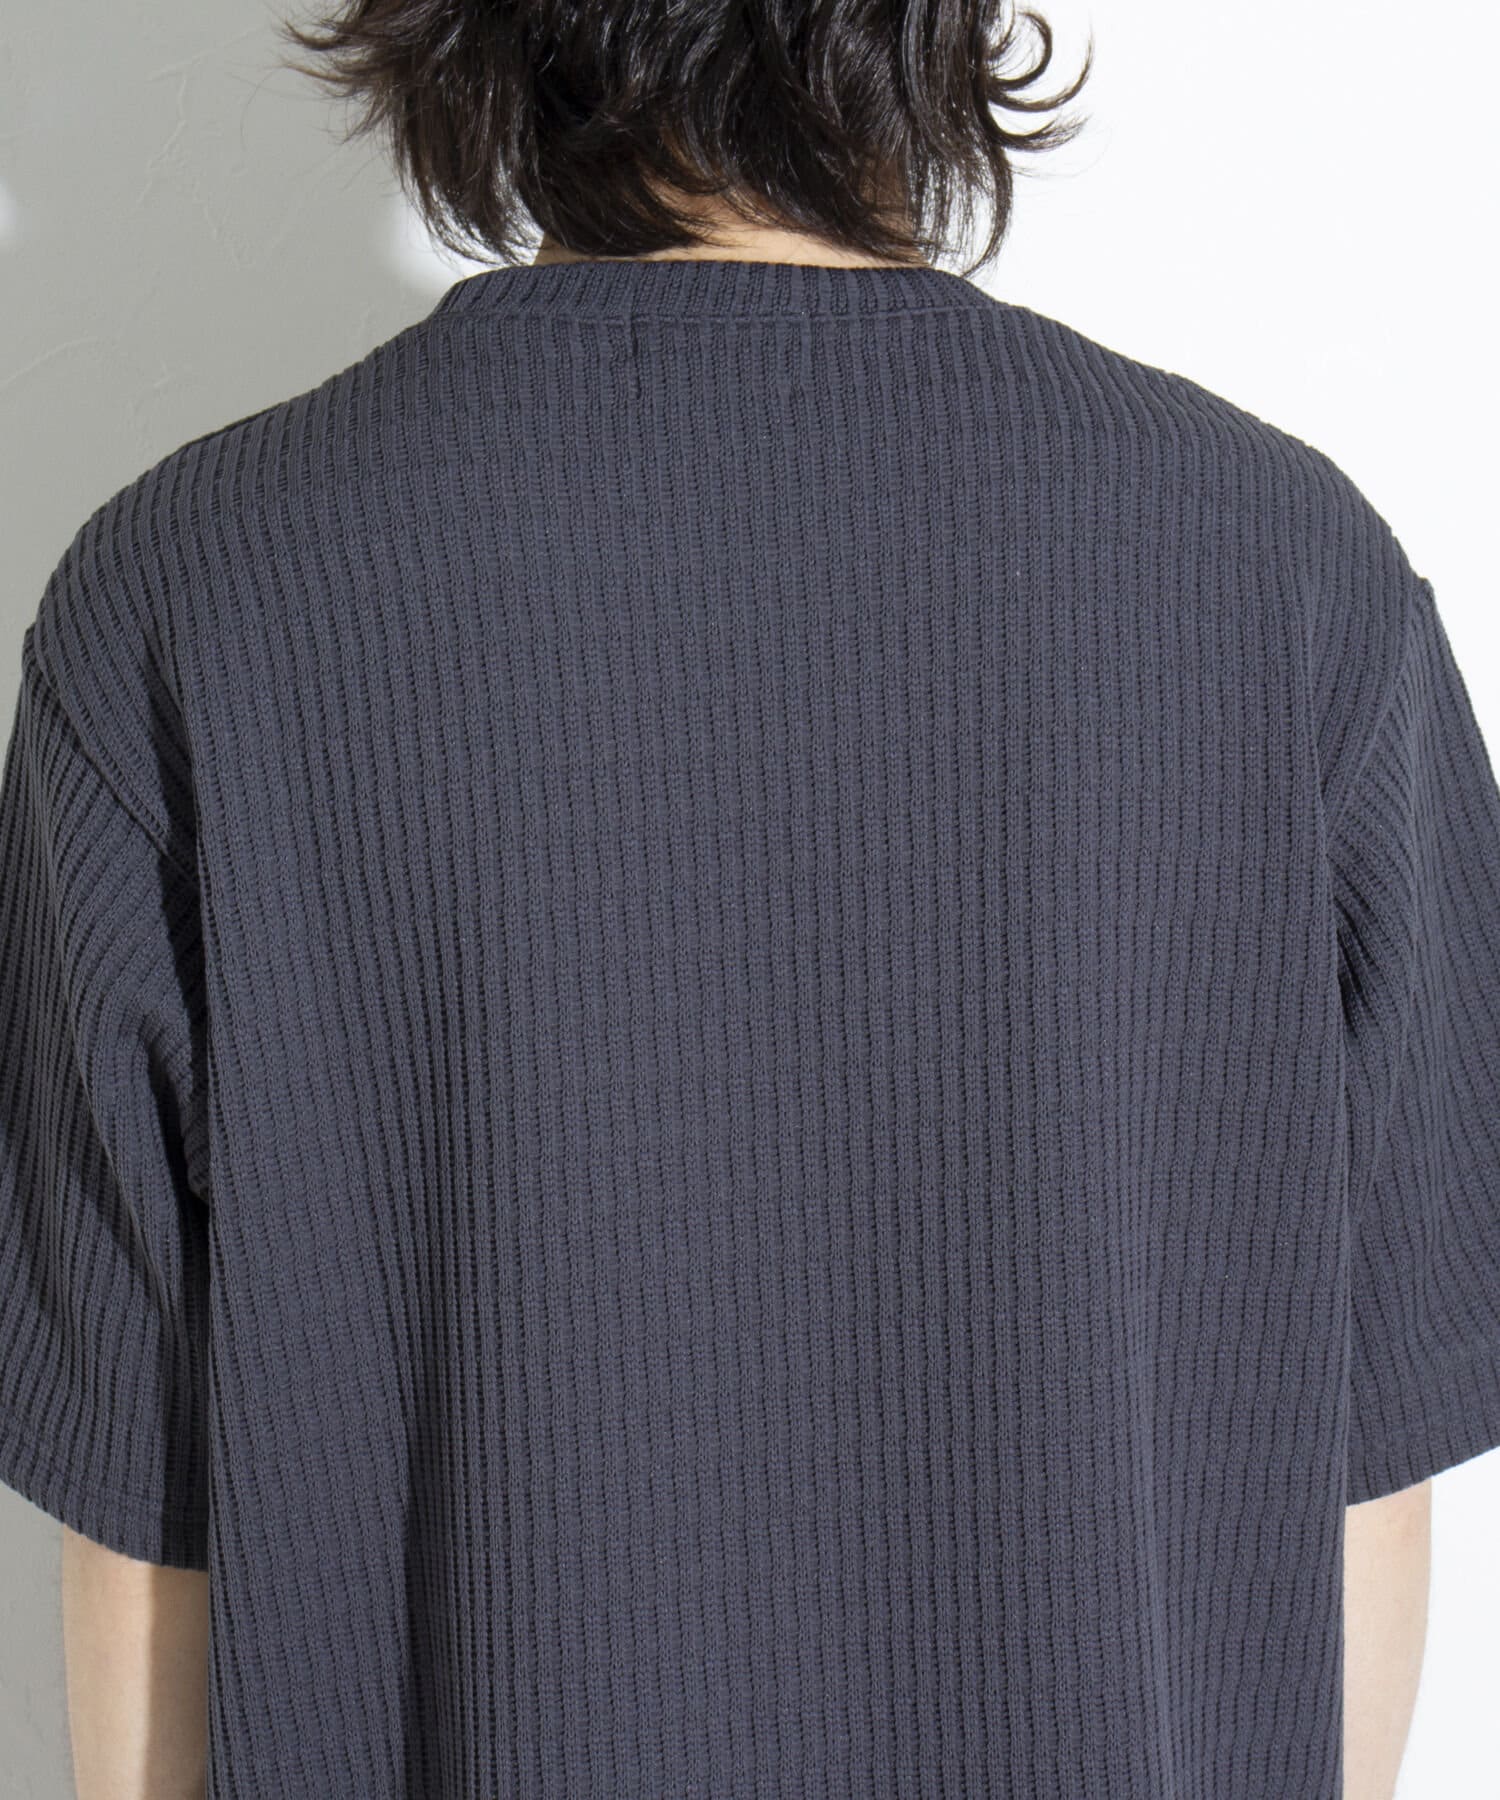 FREDY & GLOSTER(フレディ アンド グロスター) 【GLOSTER】クォーターゲージ ニットTシャツ 半袖サマーニット 日本製